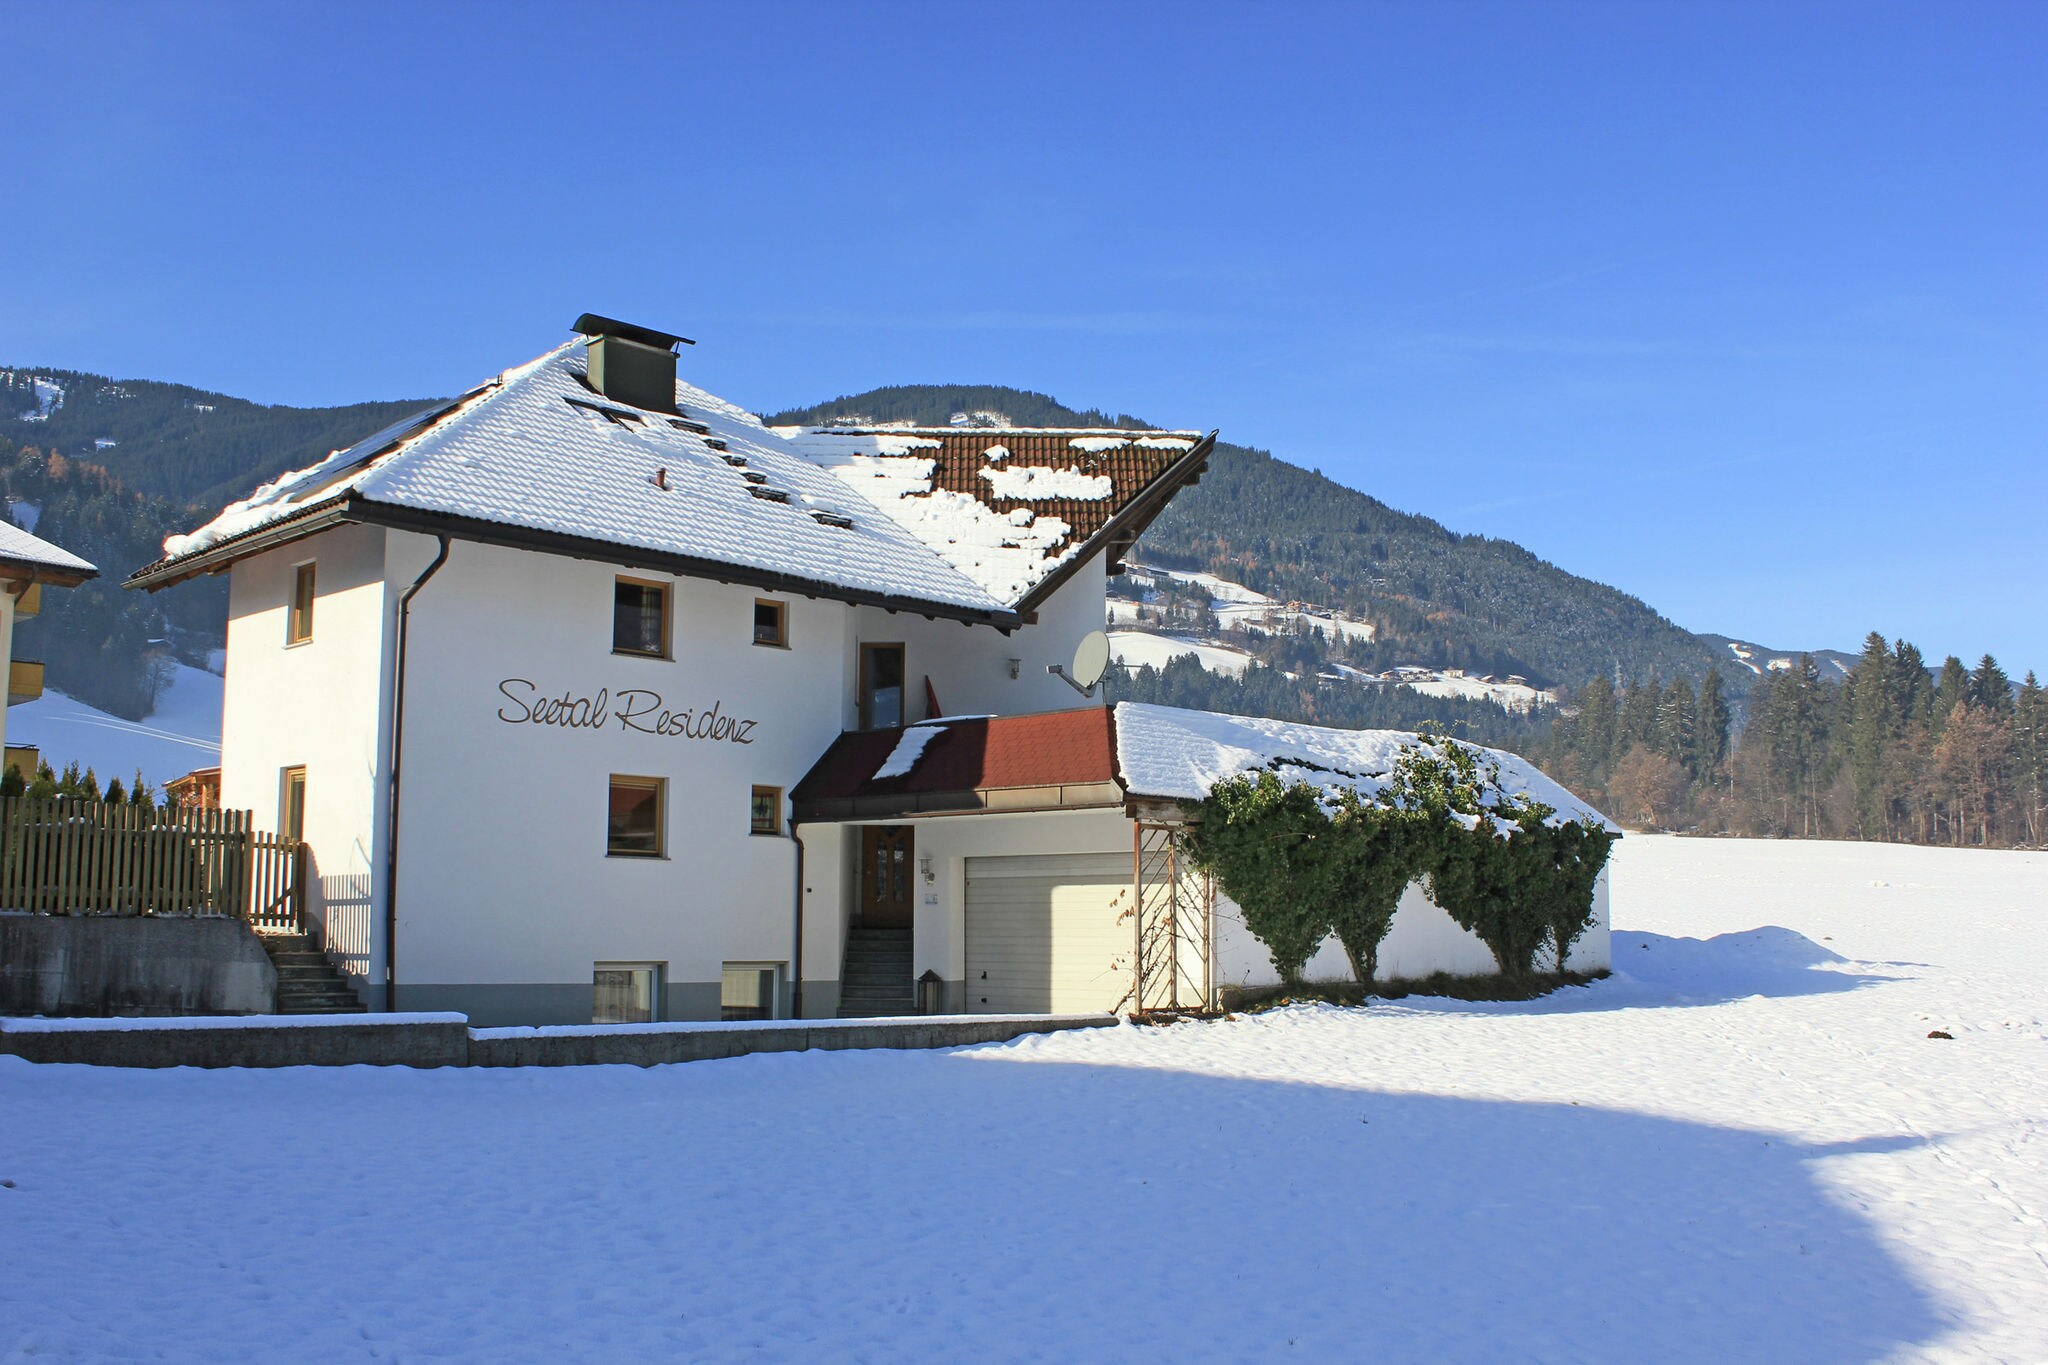 Ruim appartement in Kaltenbach met skischoenverwarmers